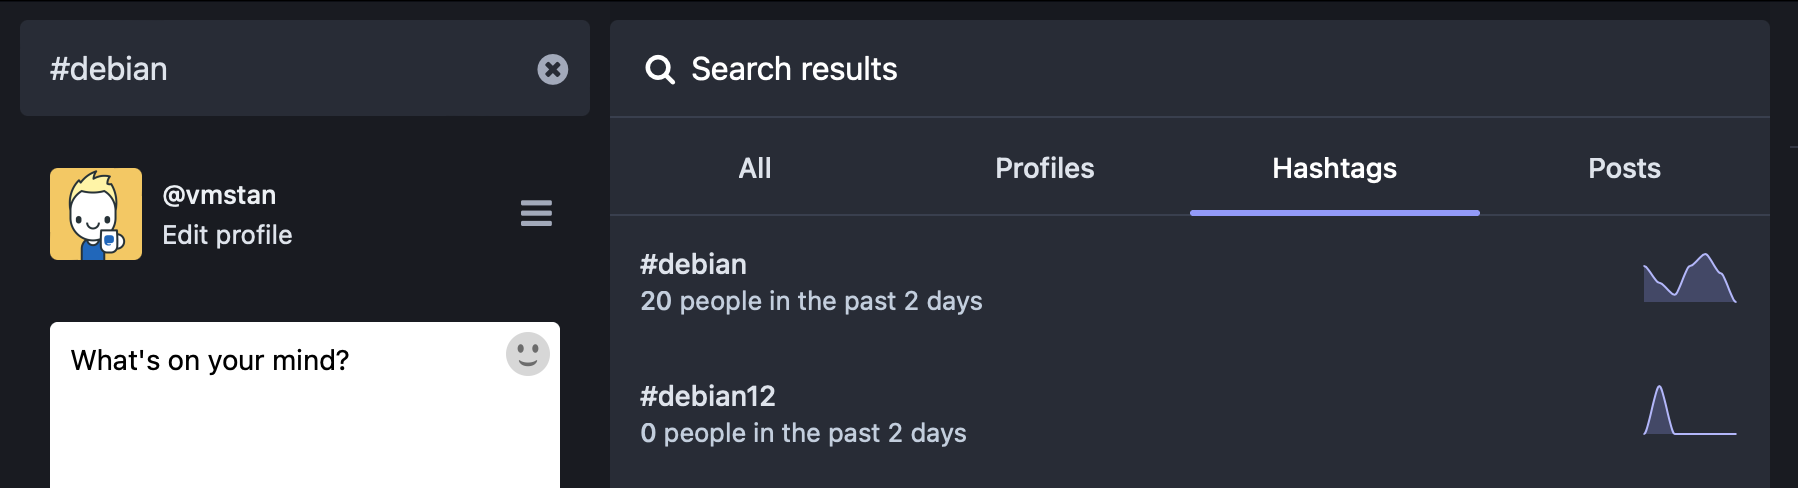 Debian Search